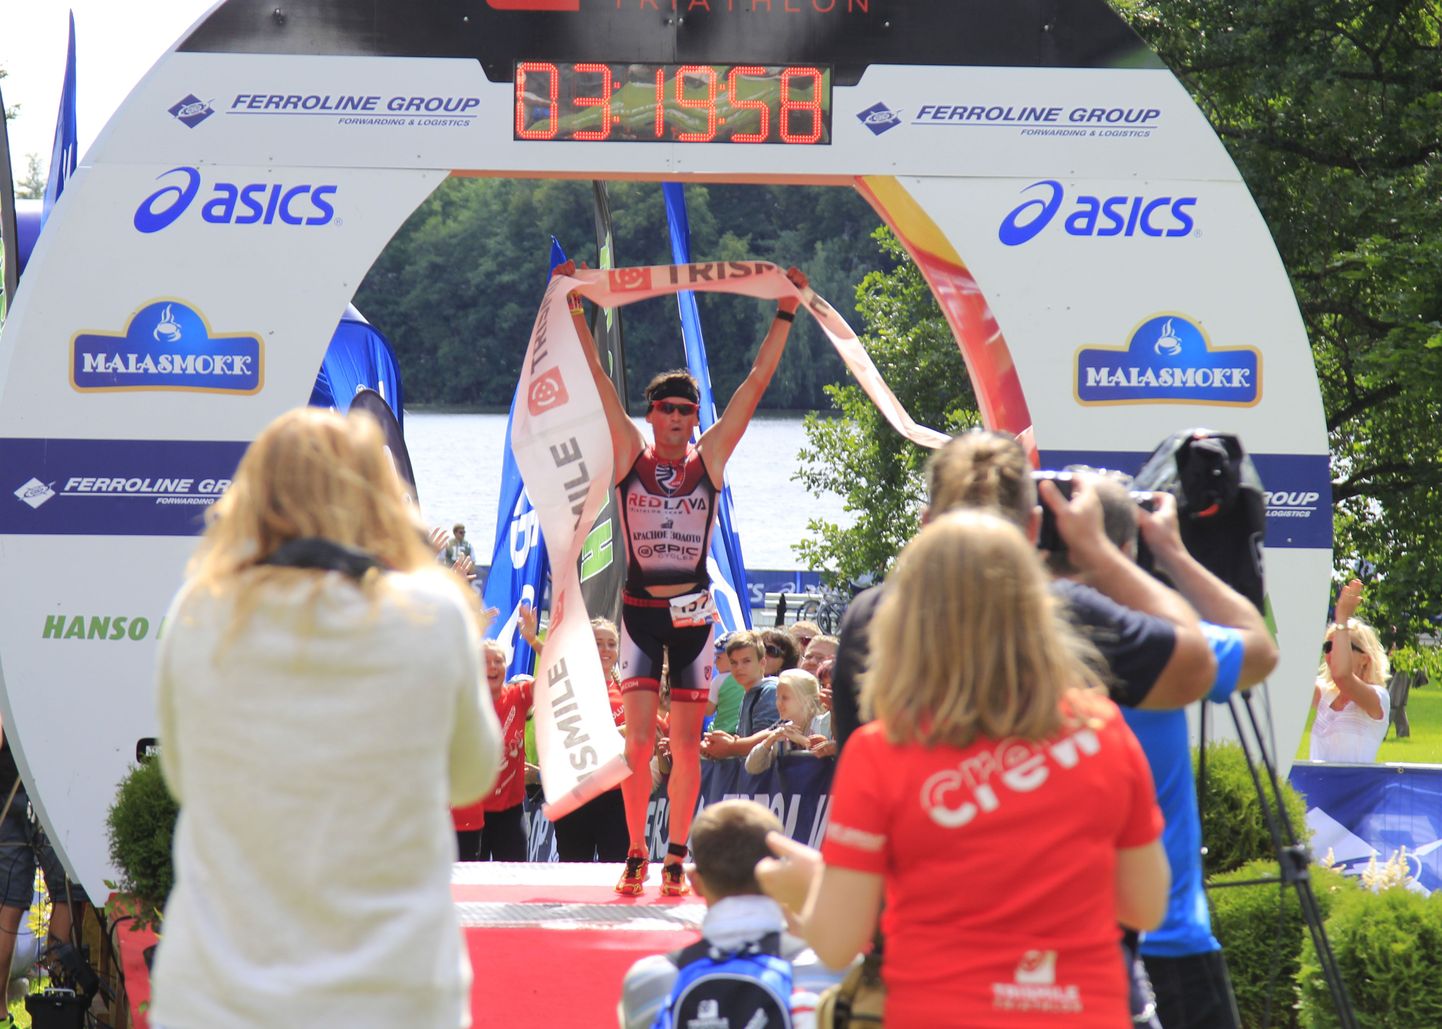 Viimastel aastatel on Eesti suurmaks triatloniks kujunenud Trismile’i triatlonifestival Pühajärve ääres, mis on kokku toonud enam kui 1000 triatlonisõpra. Tuleval aastal samas peetava Ironman’i osalejate limiit on 2000 inimest ja suure tõenäosusega täituvad kohad kiiresti.